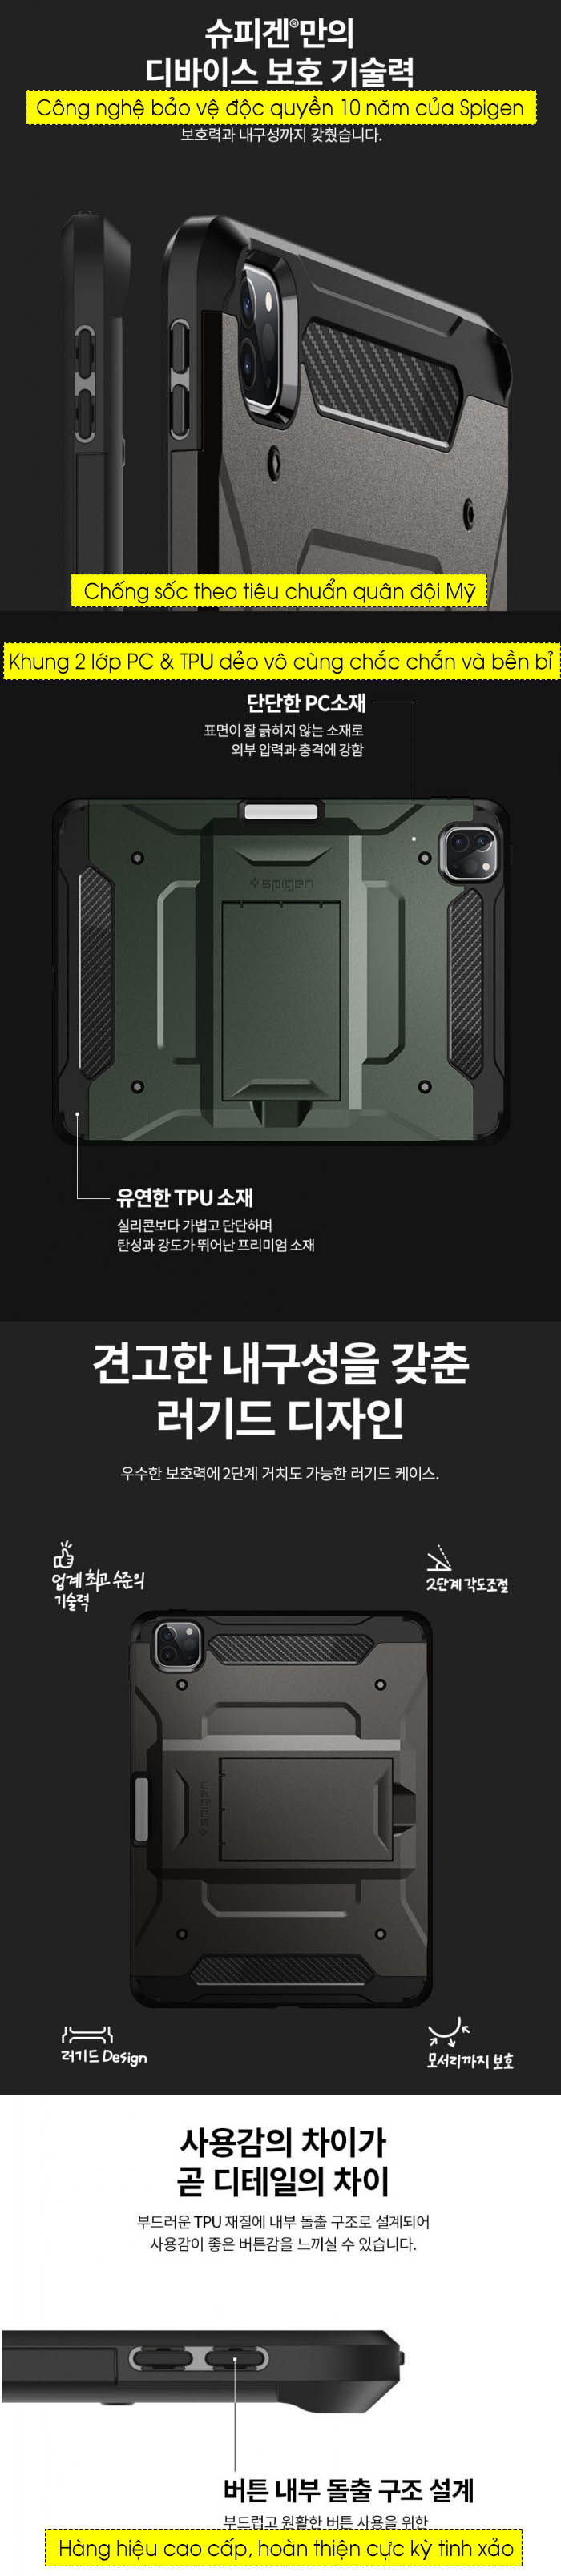 Ốp lưng iPad Pro 11 2020 Spigen Tough Armor PRO 4